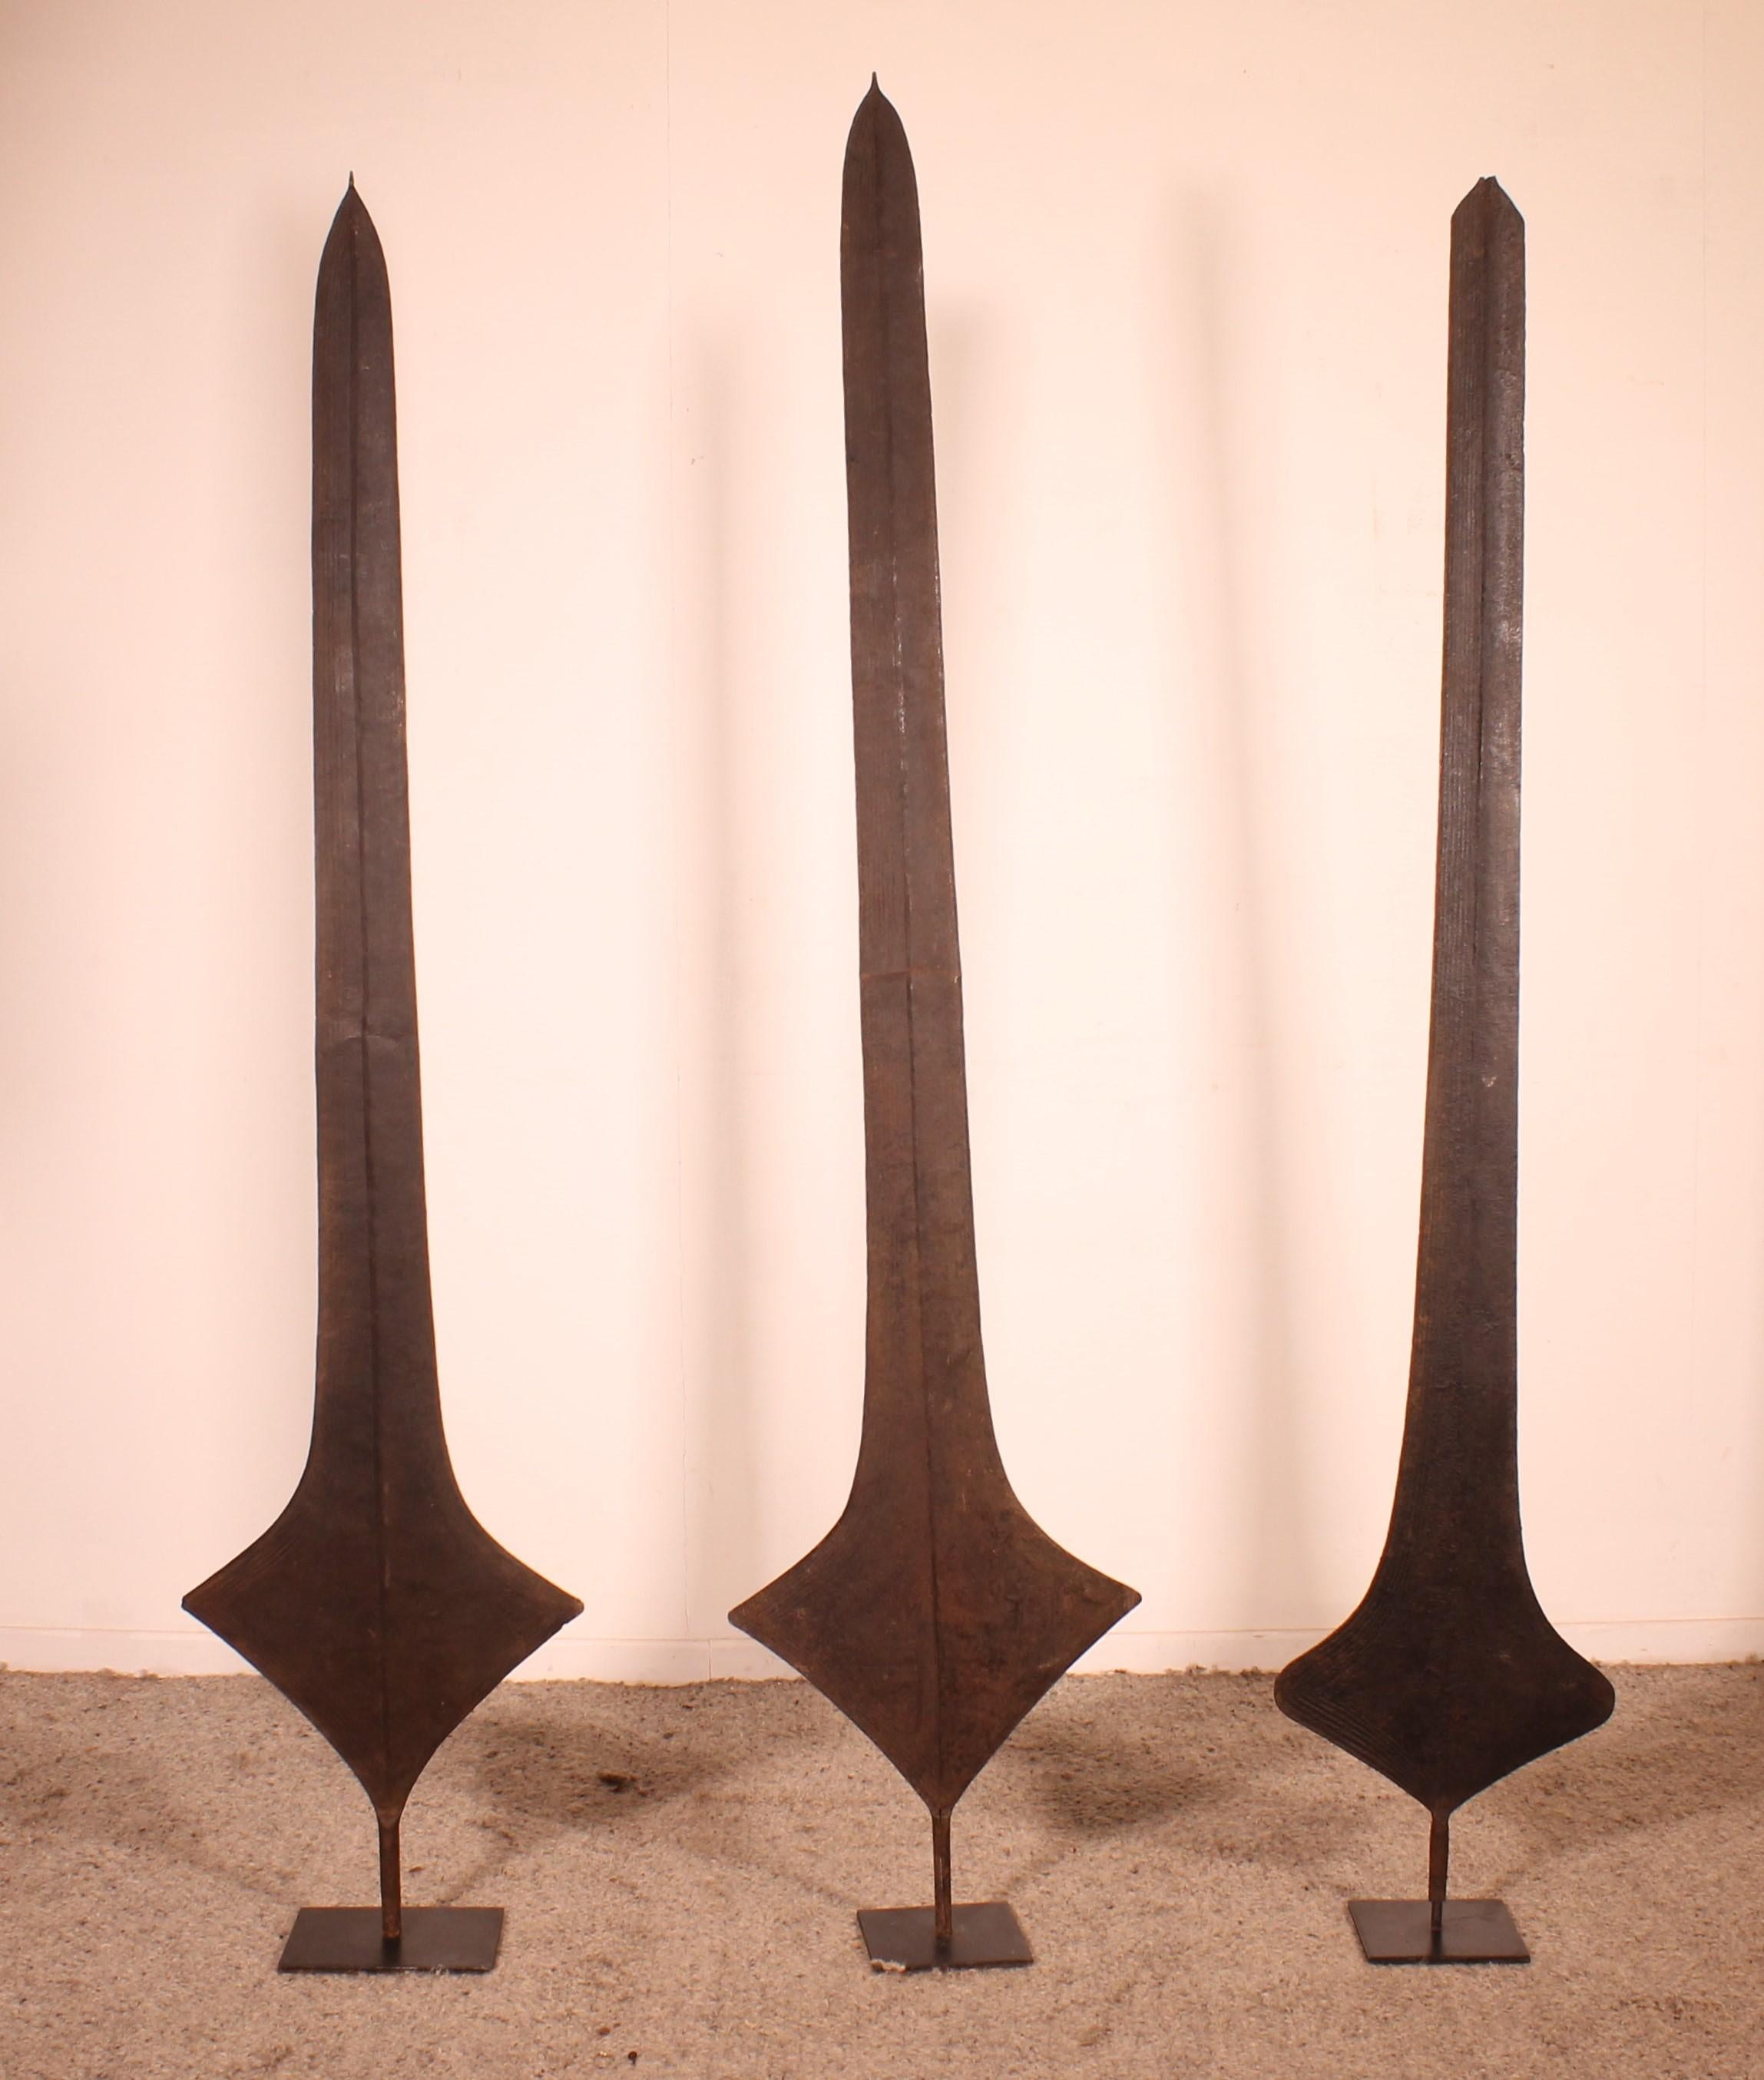 Trois lames de monnaie ou épées africaines en fer, provenant des peuples Topoke de la République démocratique du Congo, joliment présentées sur un support métallique personnalisé. Ces lames étaient utilisées par divers groupes tribaux en République